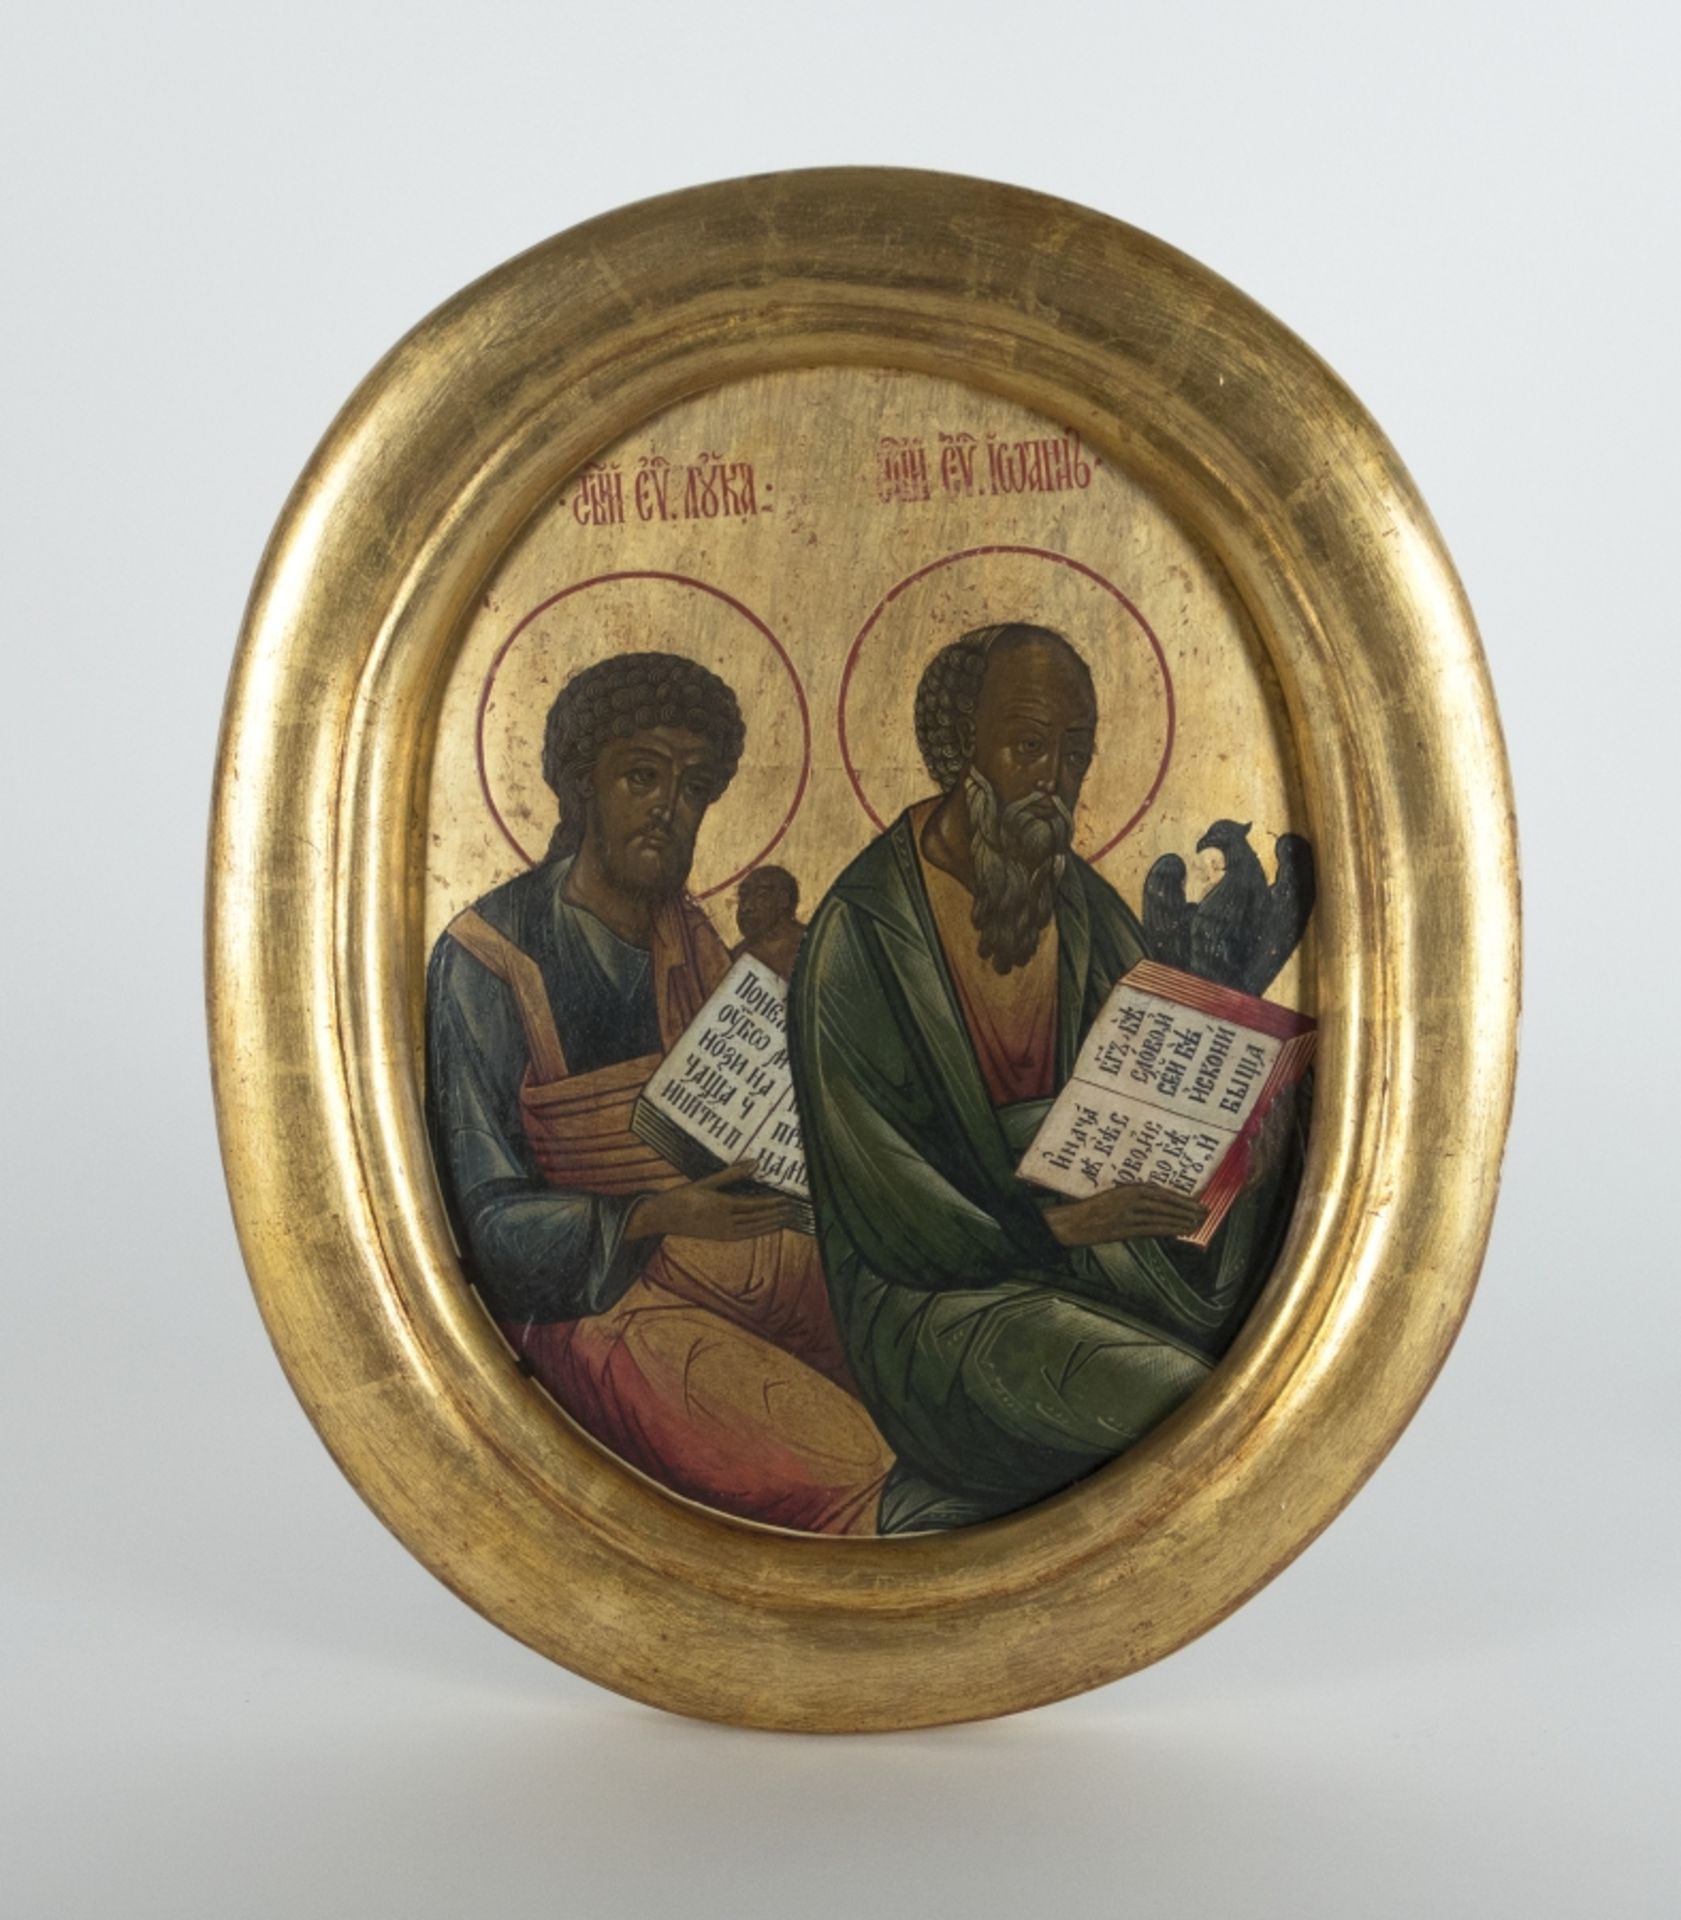 Russland, 19. Jh.?:  Die Heiligen Evangelisten Lukas und Johannes